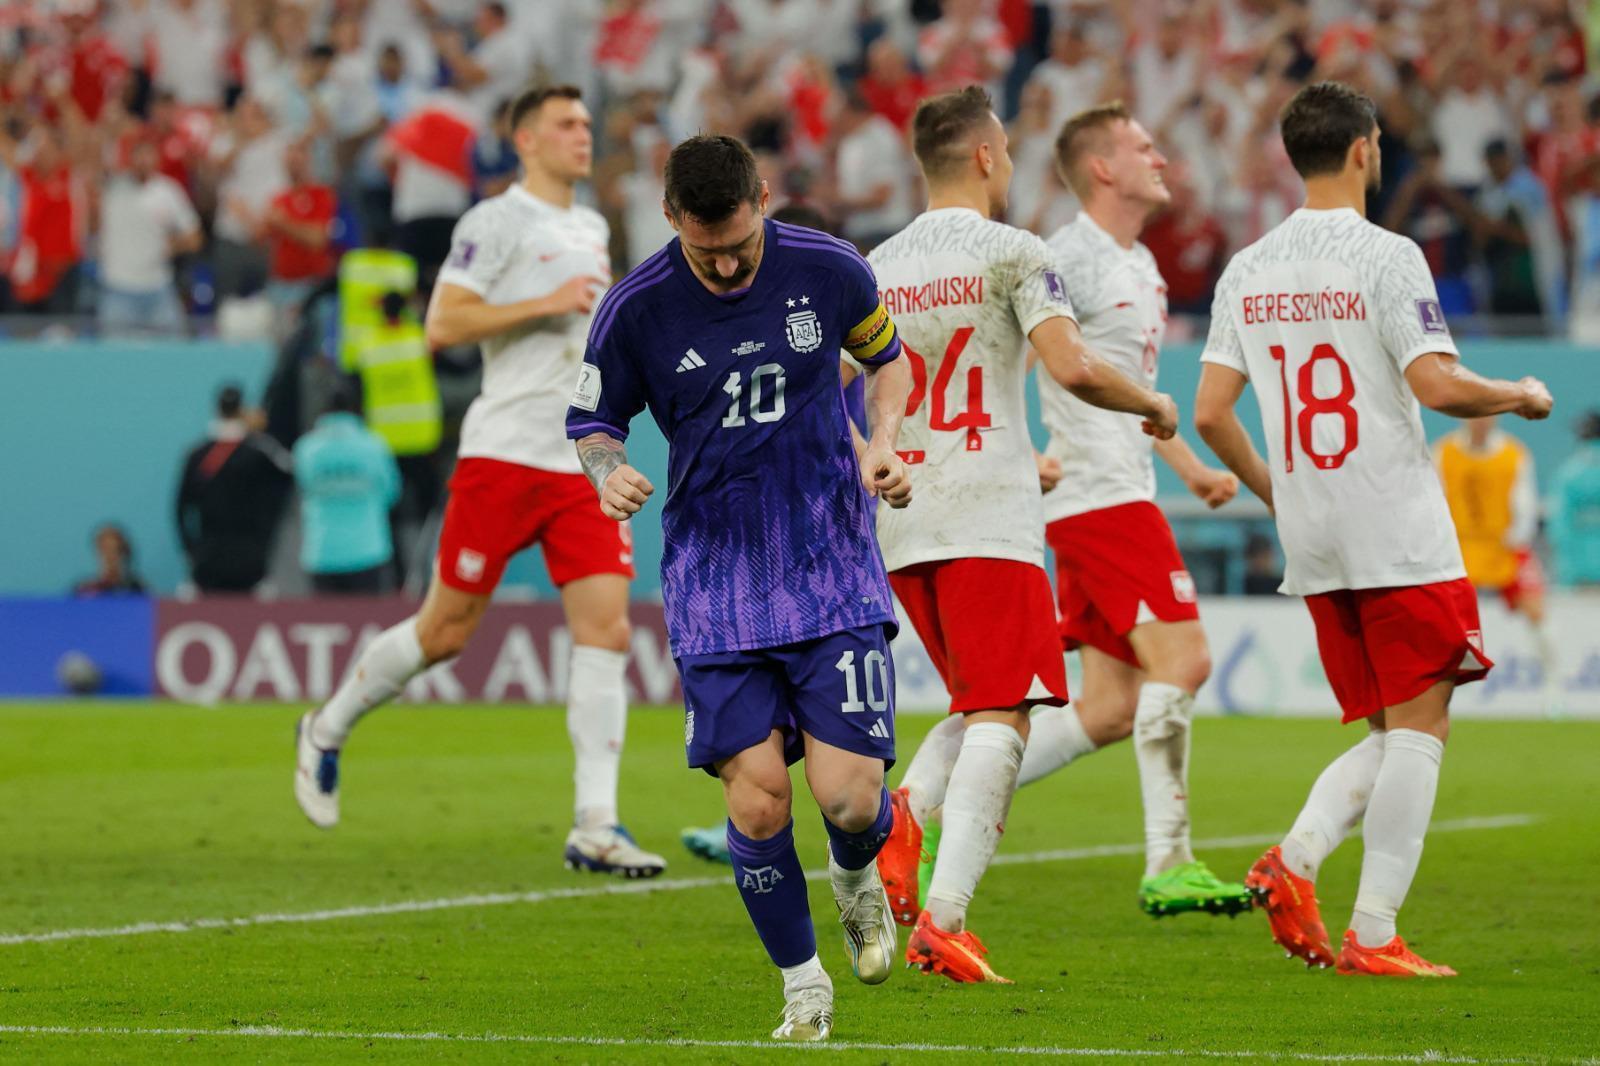 Lionel Messili Arjantin son 16da Polonya-Arjantin maç sonucu: 0-2 (Dünya Kupası Maç Özeti)